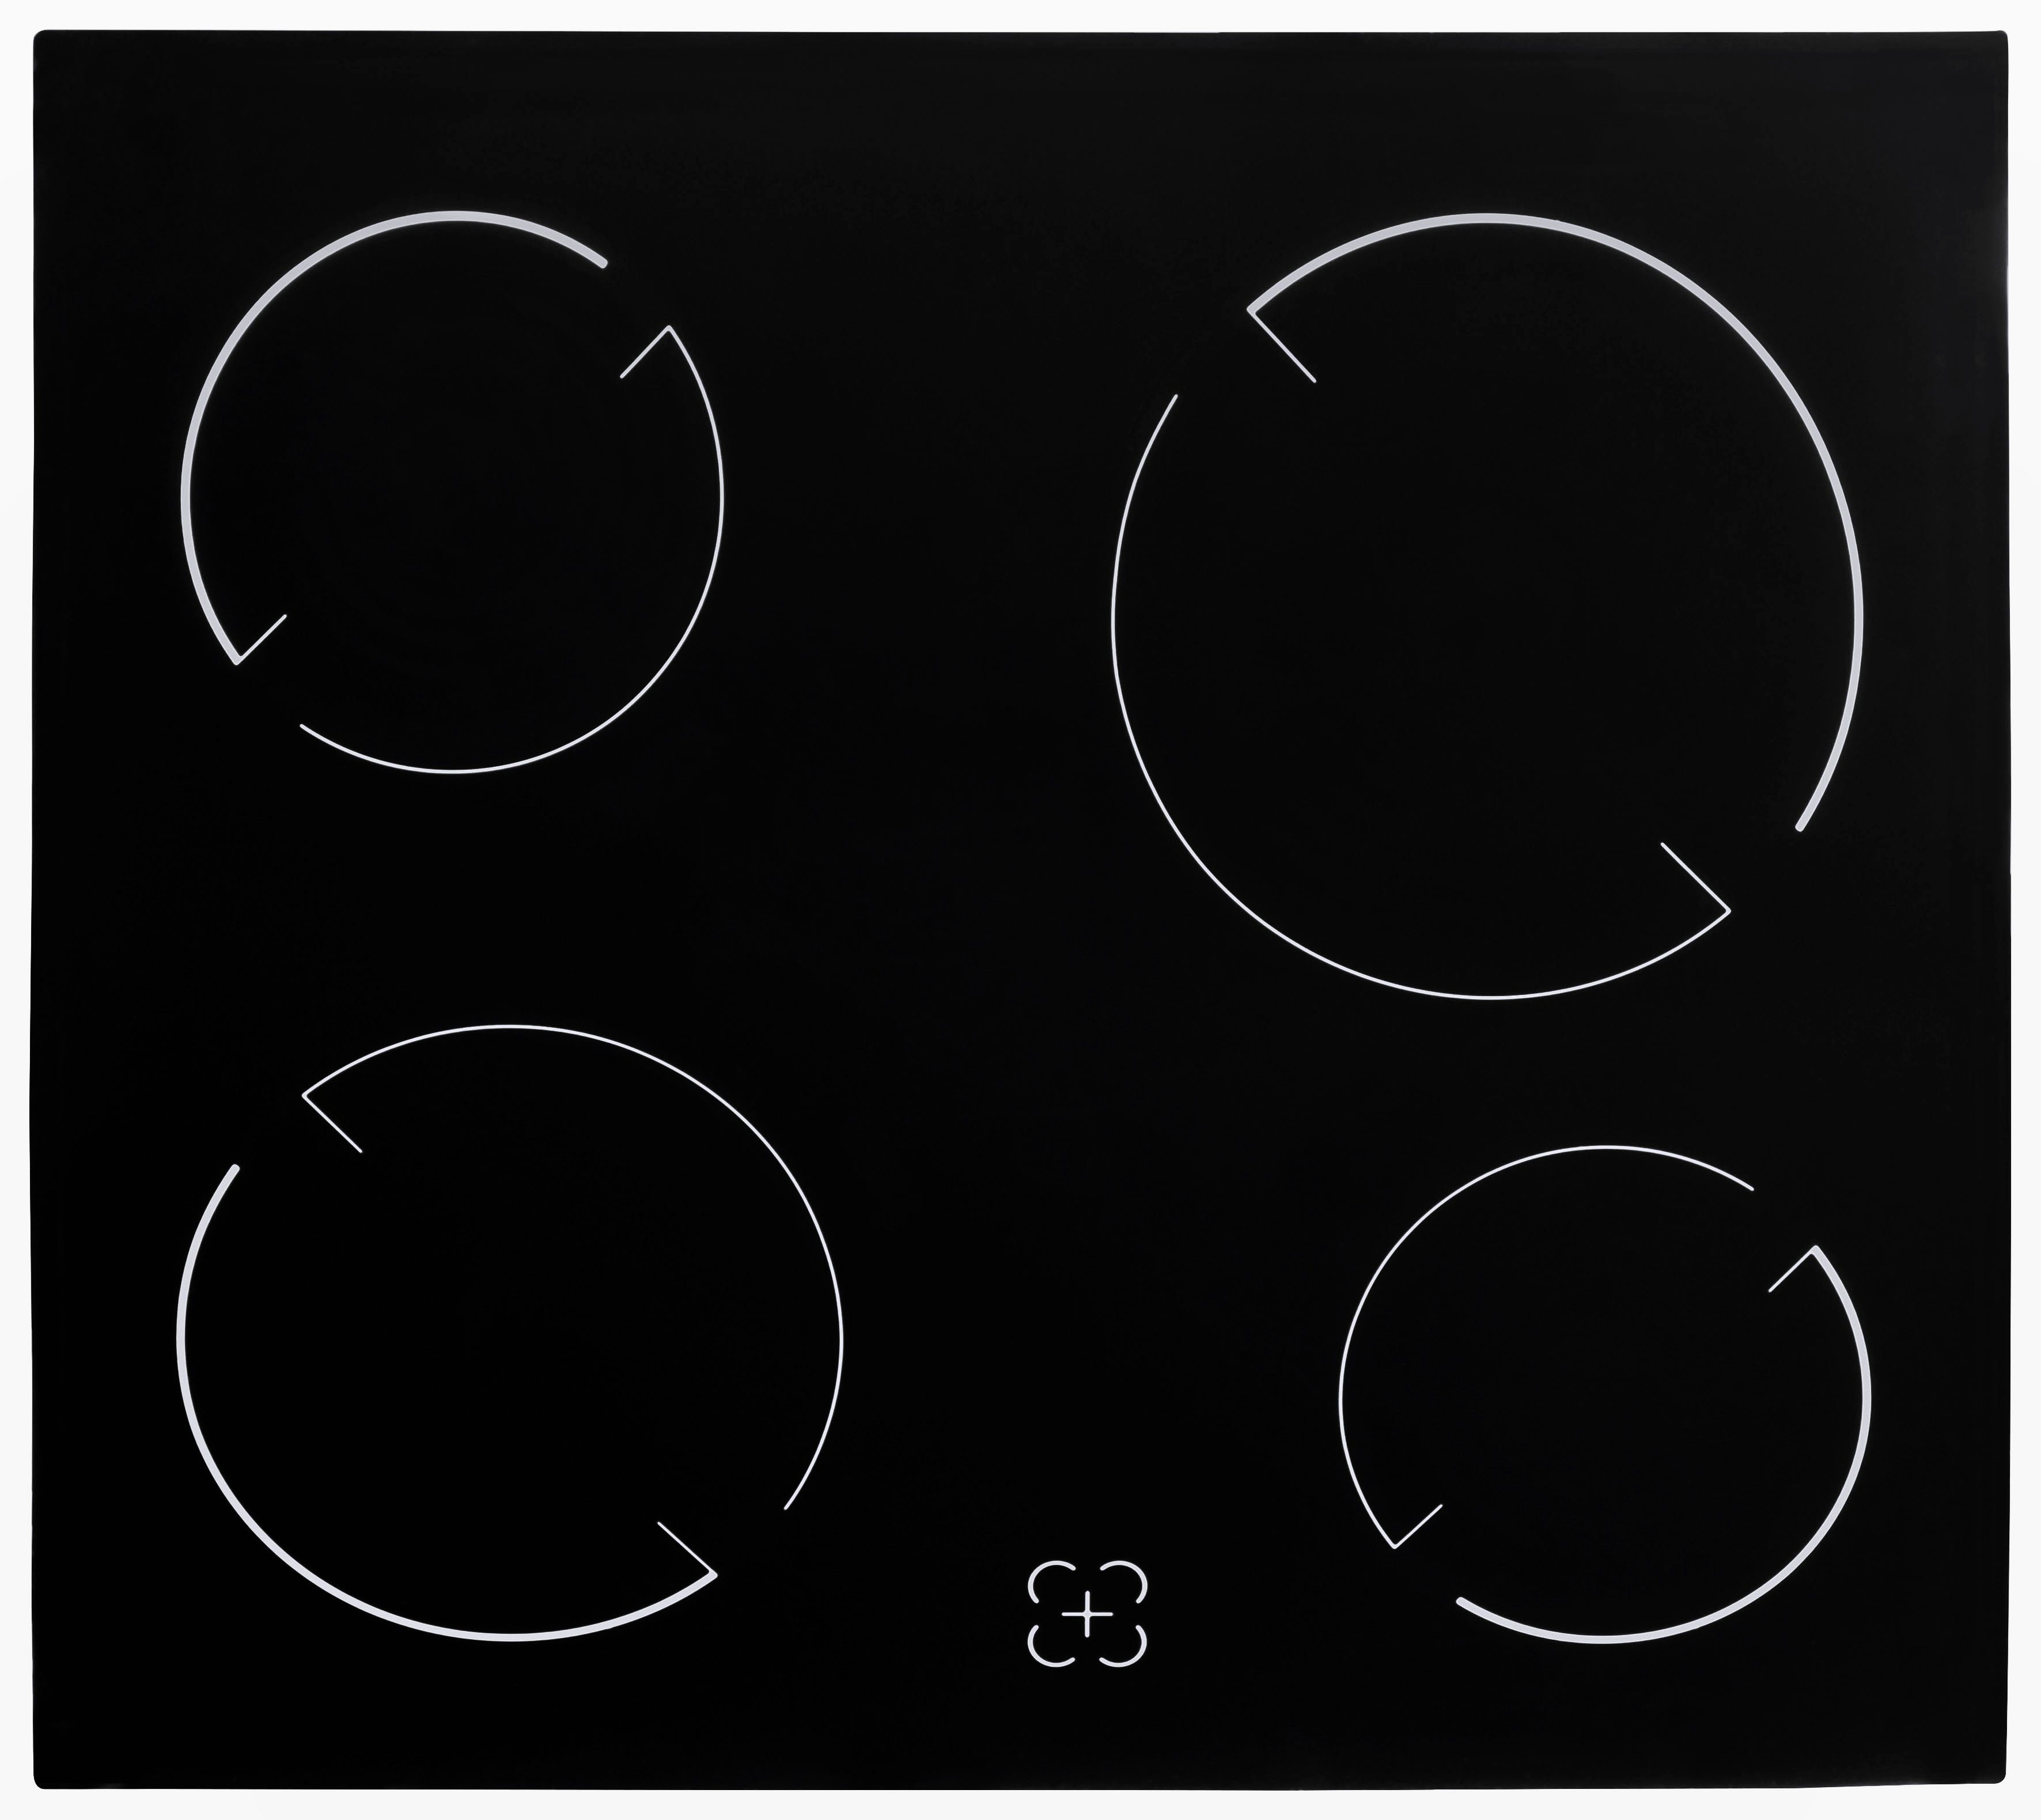 HELD MÖBEL Küchenzeile Brindisi, mit 210 | Breite cm E-Geräten, Hochglanz/eichefarben schwarz eichefarben